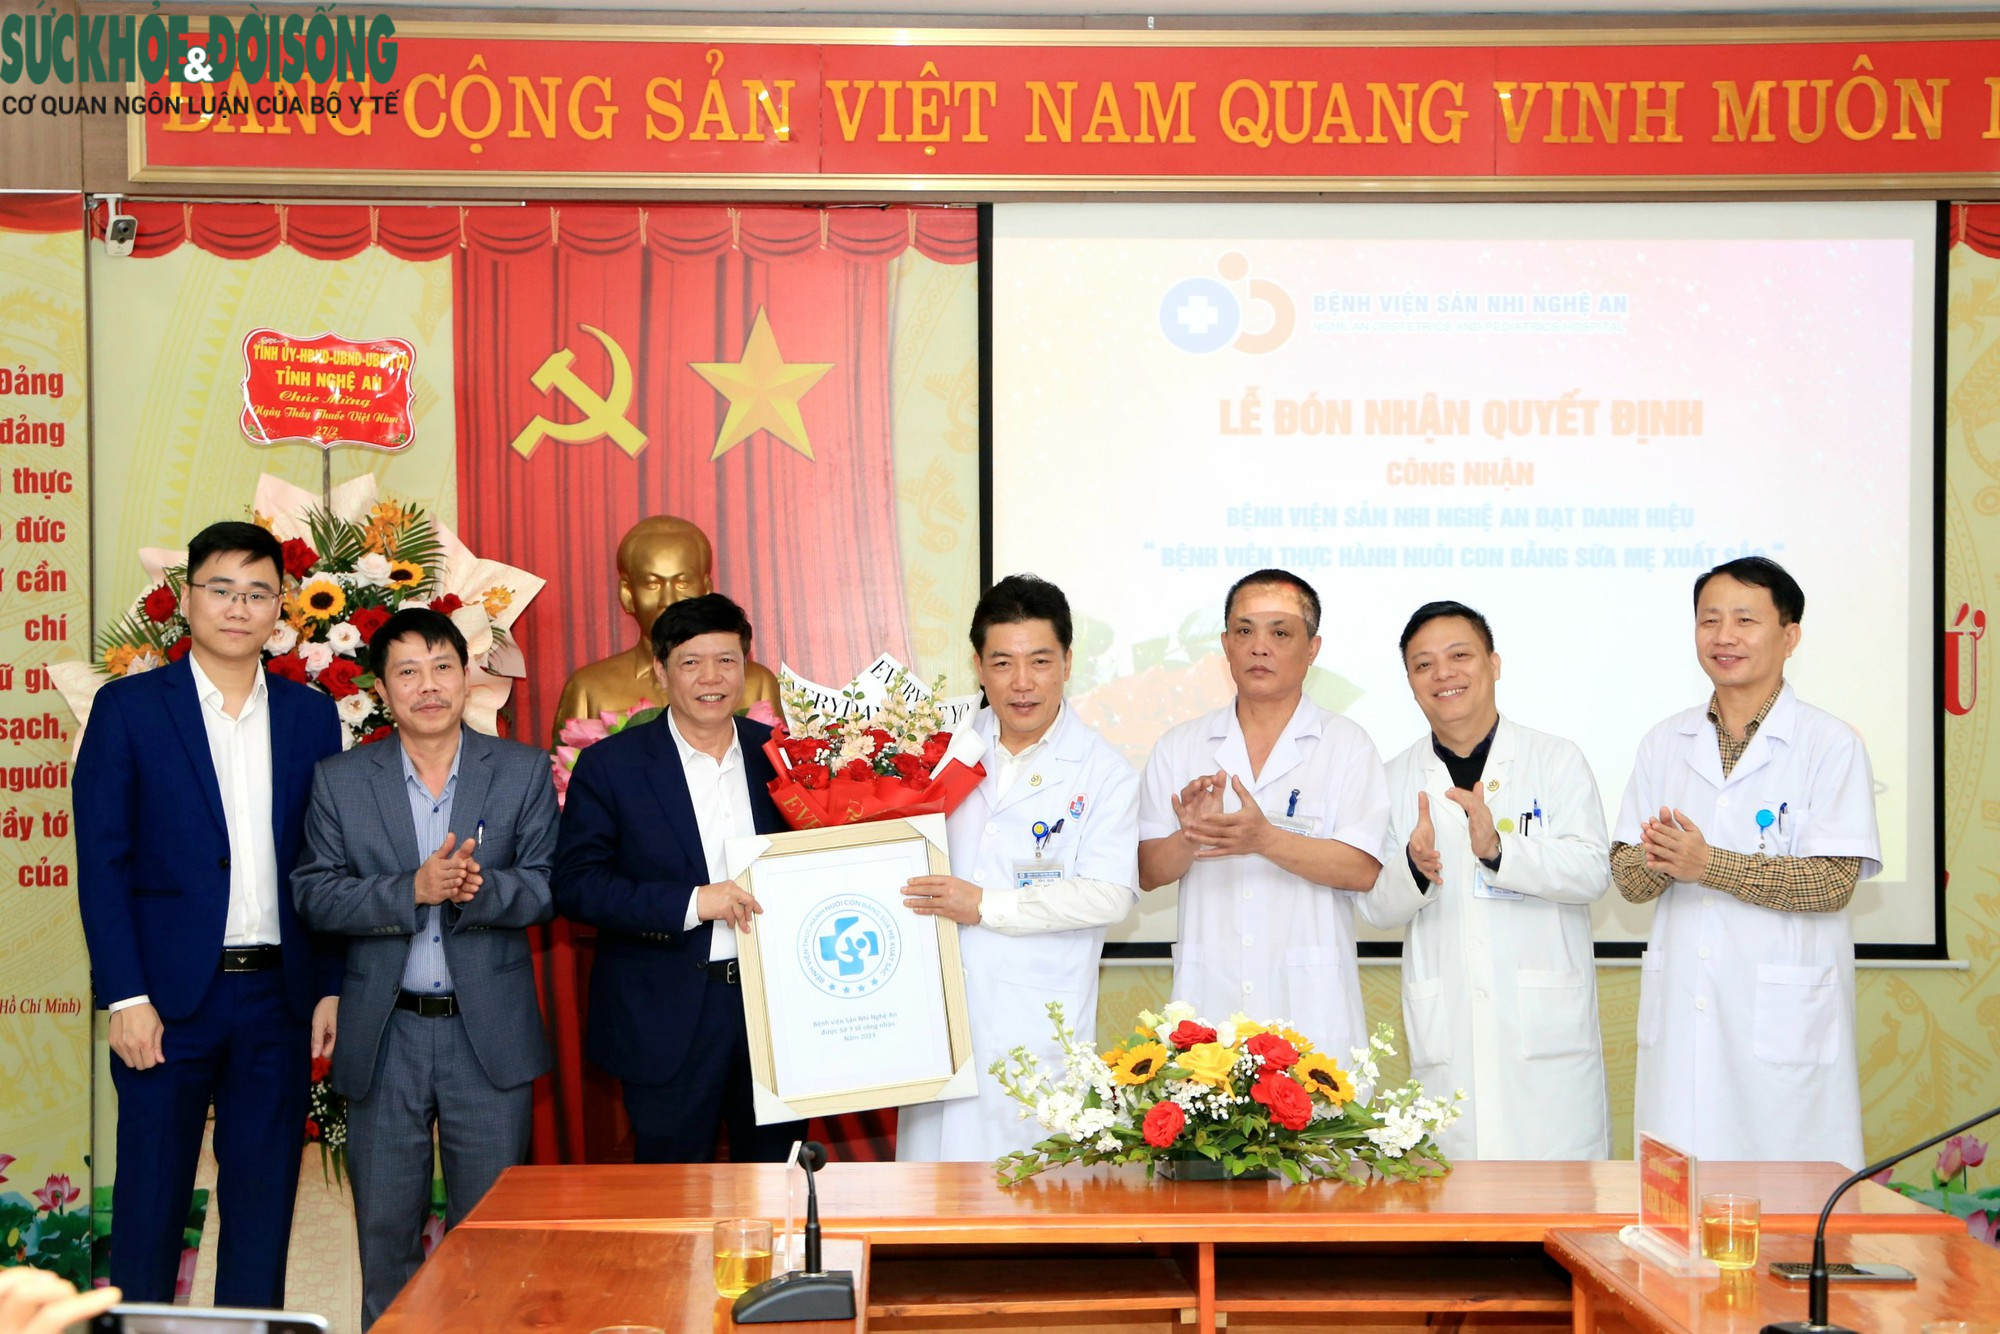 2 bệnh viện ở Nghệ An đón nhận danh hiệu “Bệnh viện thực hành nuôi con bằng sữa mẹ xuất sắc” - Ảnh 1.